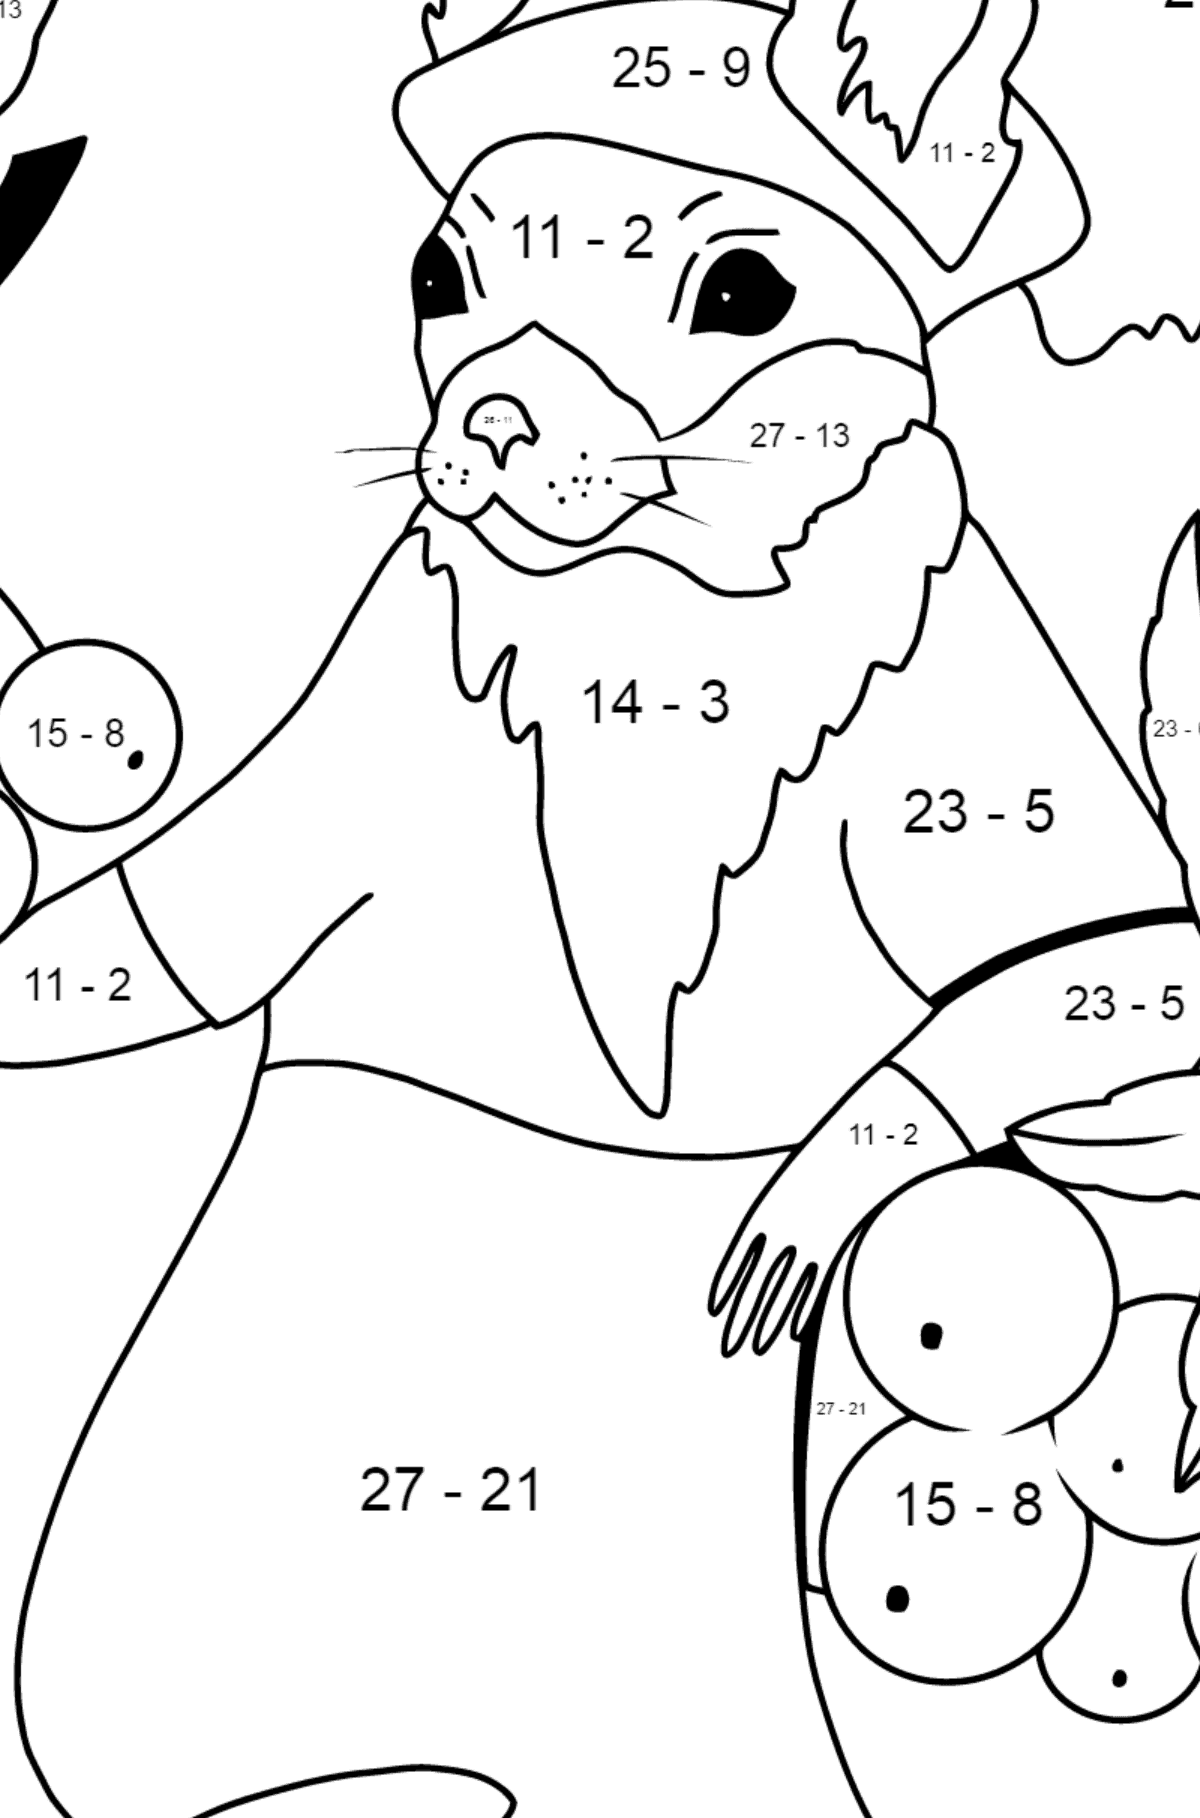 Herbstliche Ausmalseite - Ein Eichhörnchen mit Vogelbeeren - Mathe Ausmalbilder - Subtraktion für Kinder